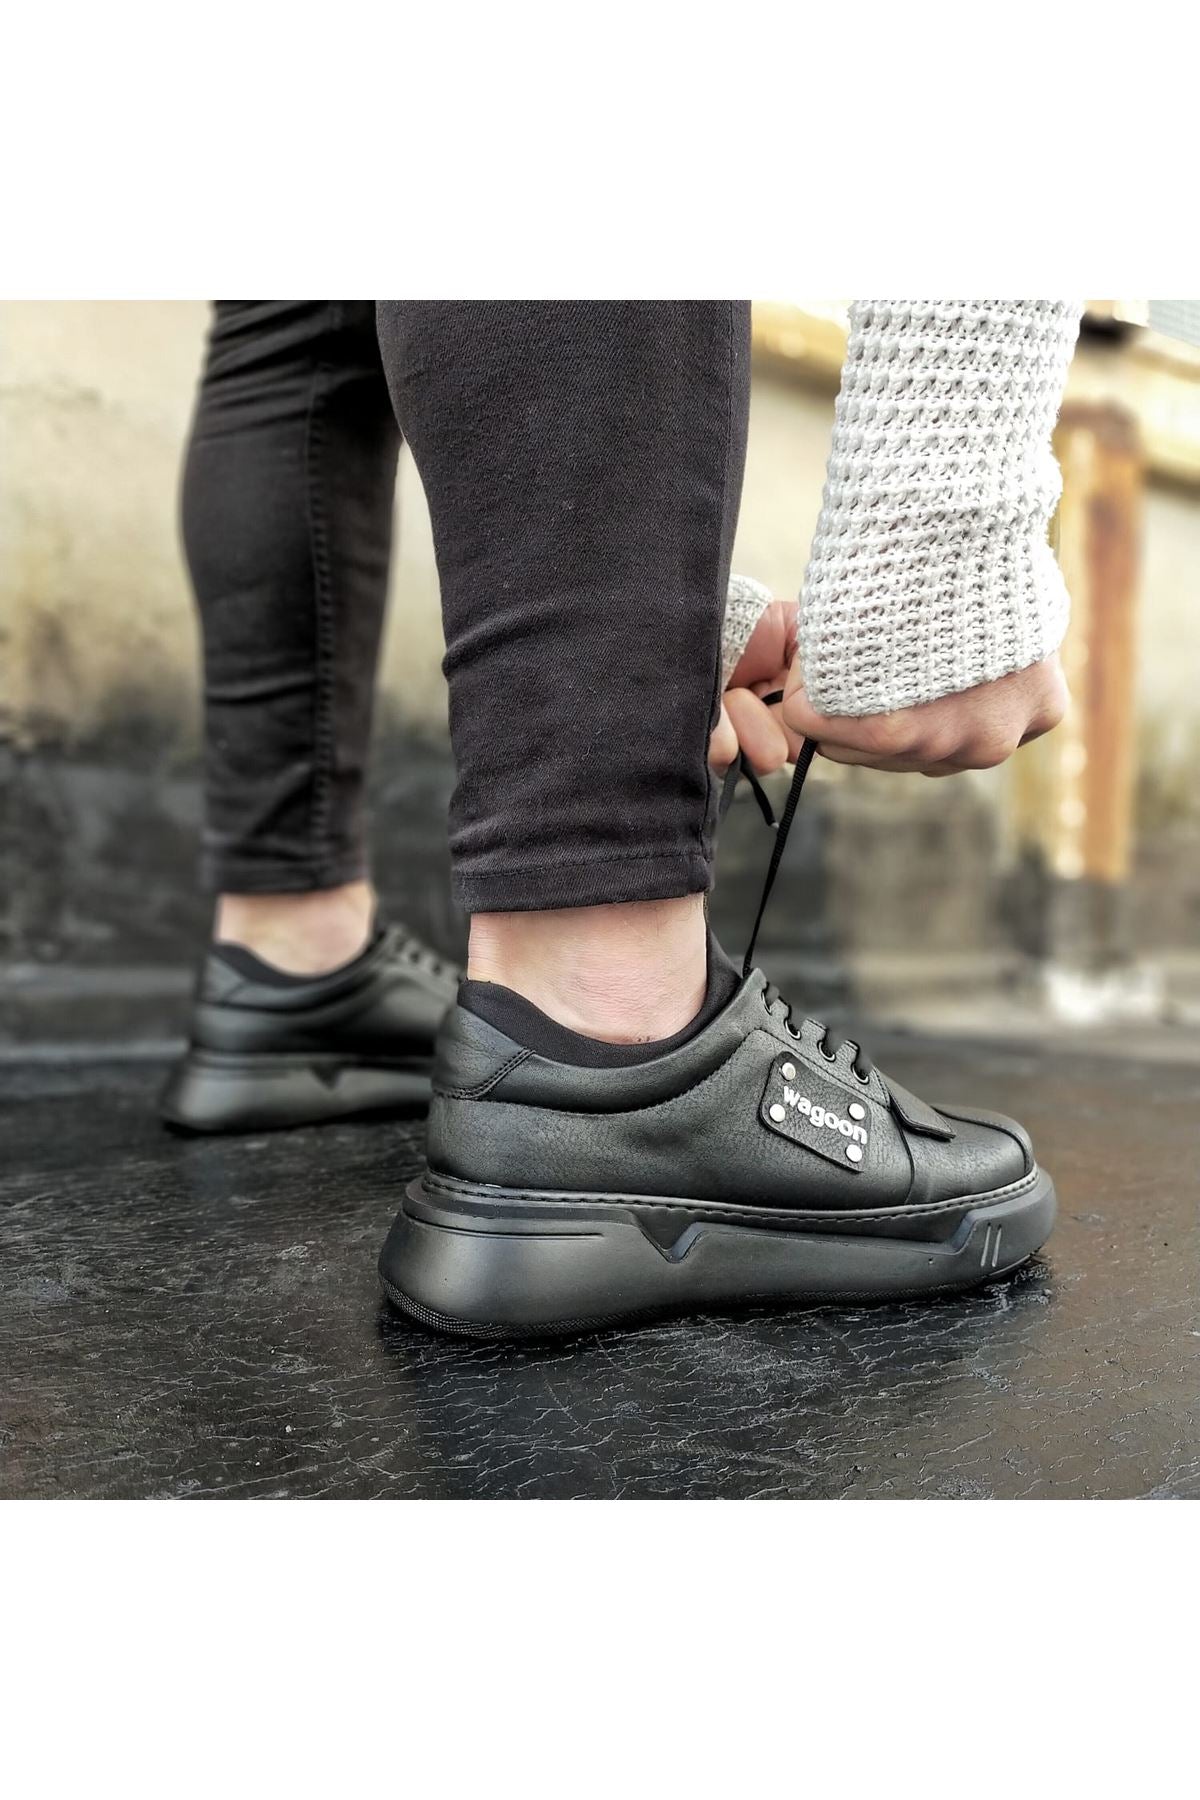 Original Design WG018 Coal Mens High Sole Shoes - STREETMODE ™